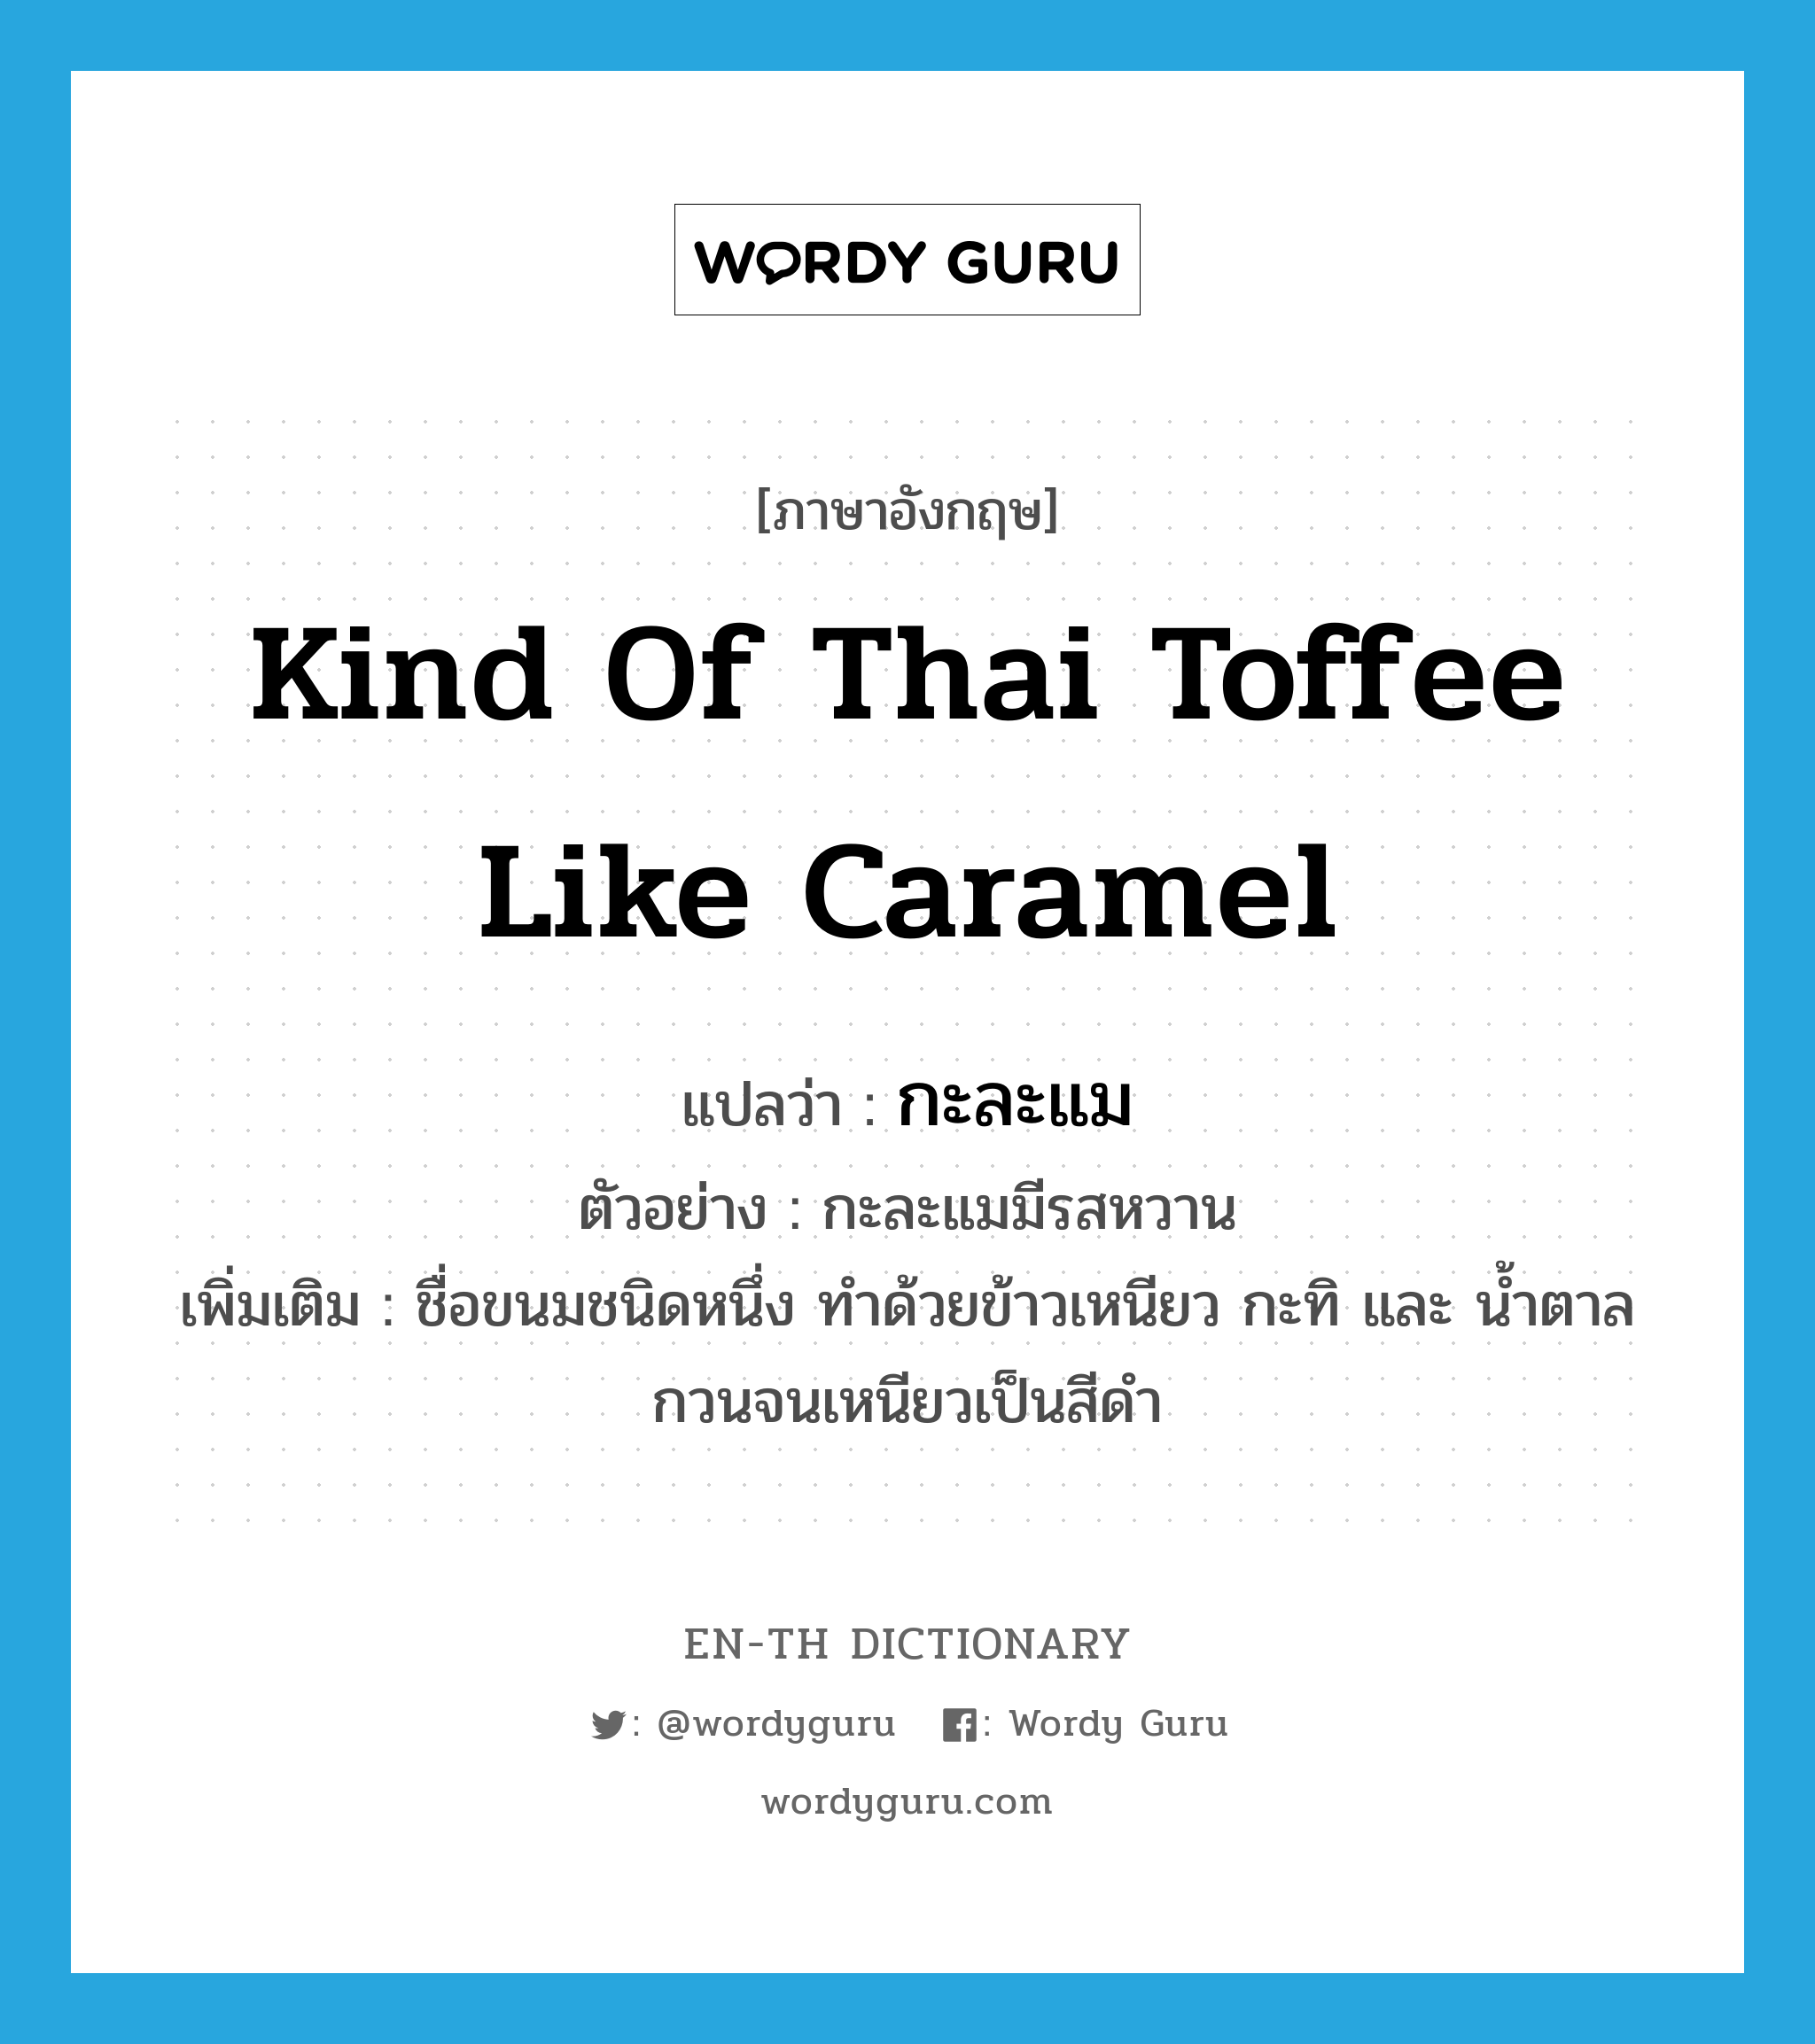 kind of Thai toffee like caramel แปลว่า?, คำศัพท์ภาษาอังกฤษ kind of Thai toffee like caramel แปลว่า กะละแม ประเภท N ตัวอย่าง กะละแมมีรสหวาน เพิ่มเติม ชื่อขนมชนิดหนึ่ง ทำด้วยข้าวเหนียว กะทิ และ น้ำตาล กวนจนเหนียวเป็นสีดำ หมวด N